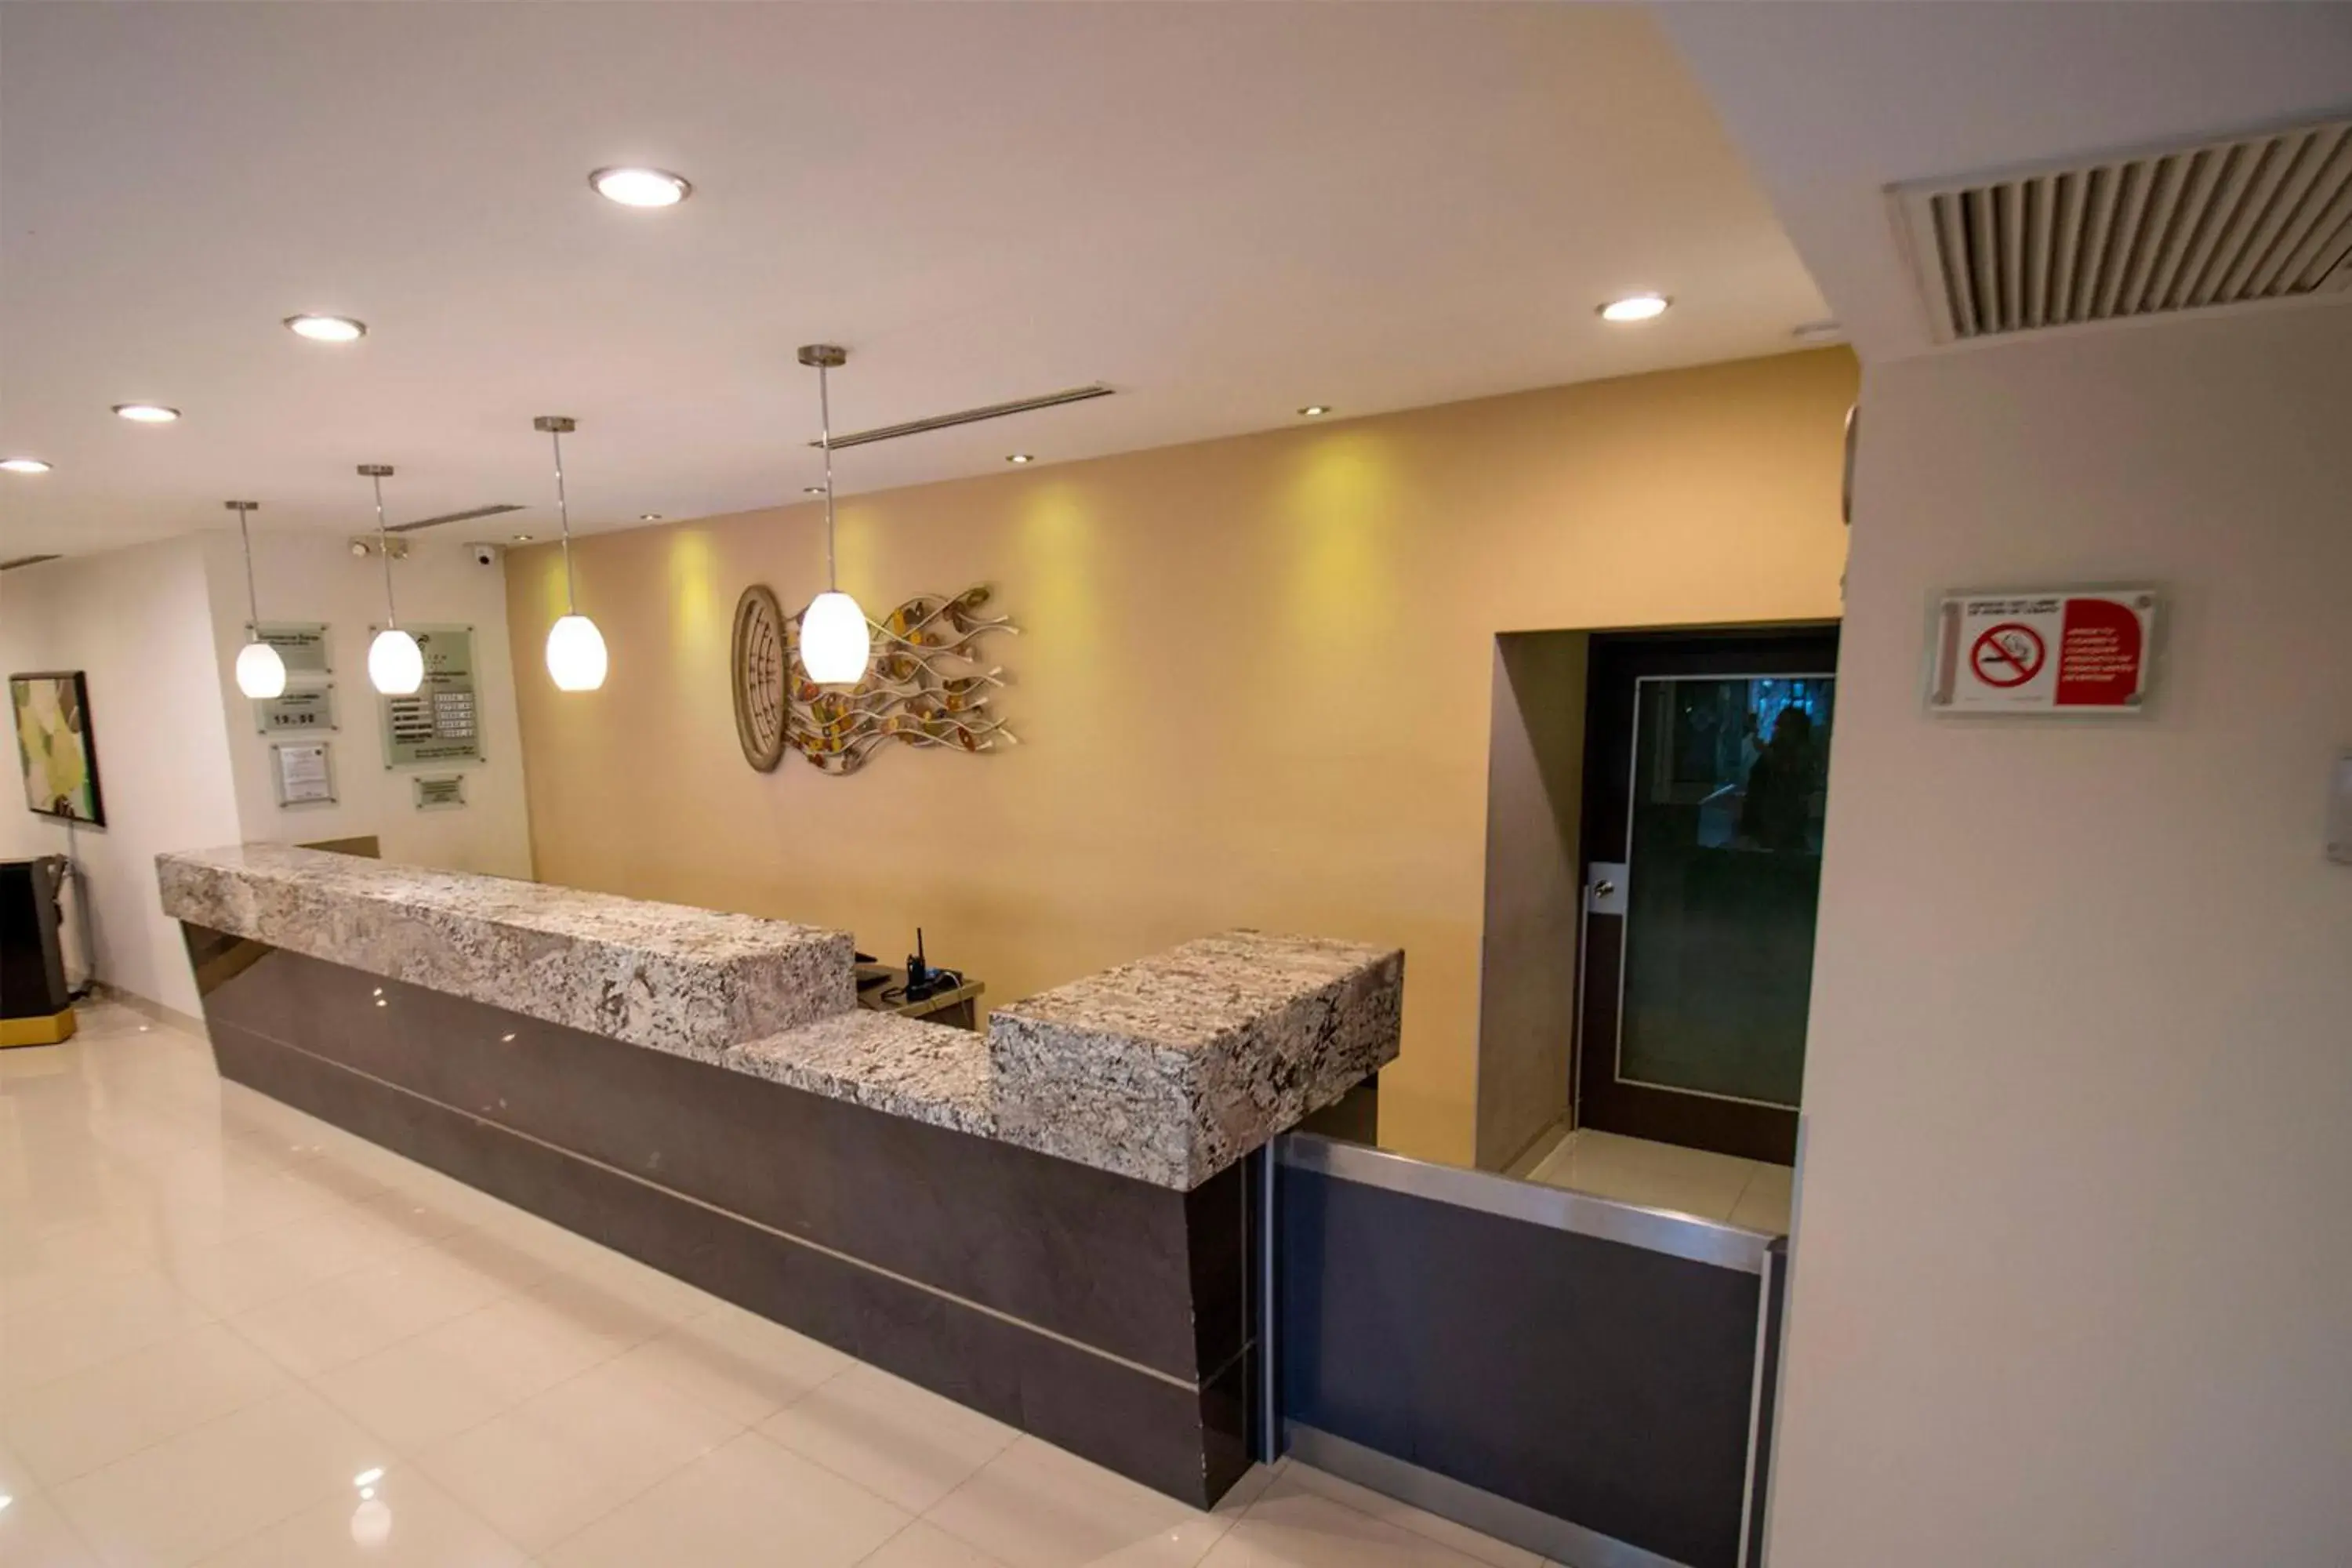 Lobby or reception, Bathroom in Araiza Palmira Hotel y Centro de Convenciones